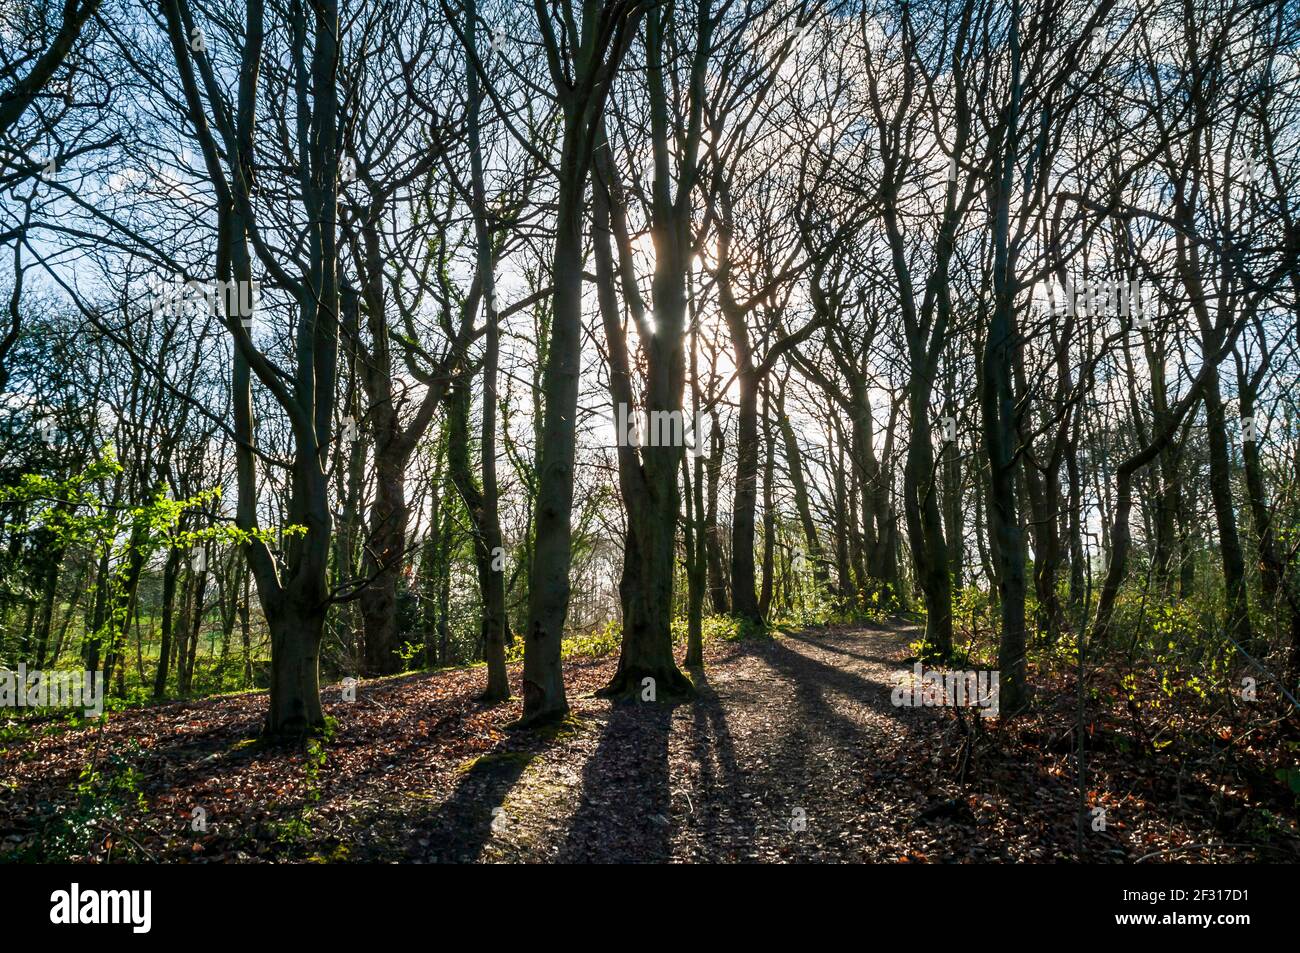 Profitez du soleil à travers les arbres denses de Leeshall Wood, dans la vallée de Gleadless, à Sheffield. Banque D'Images